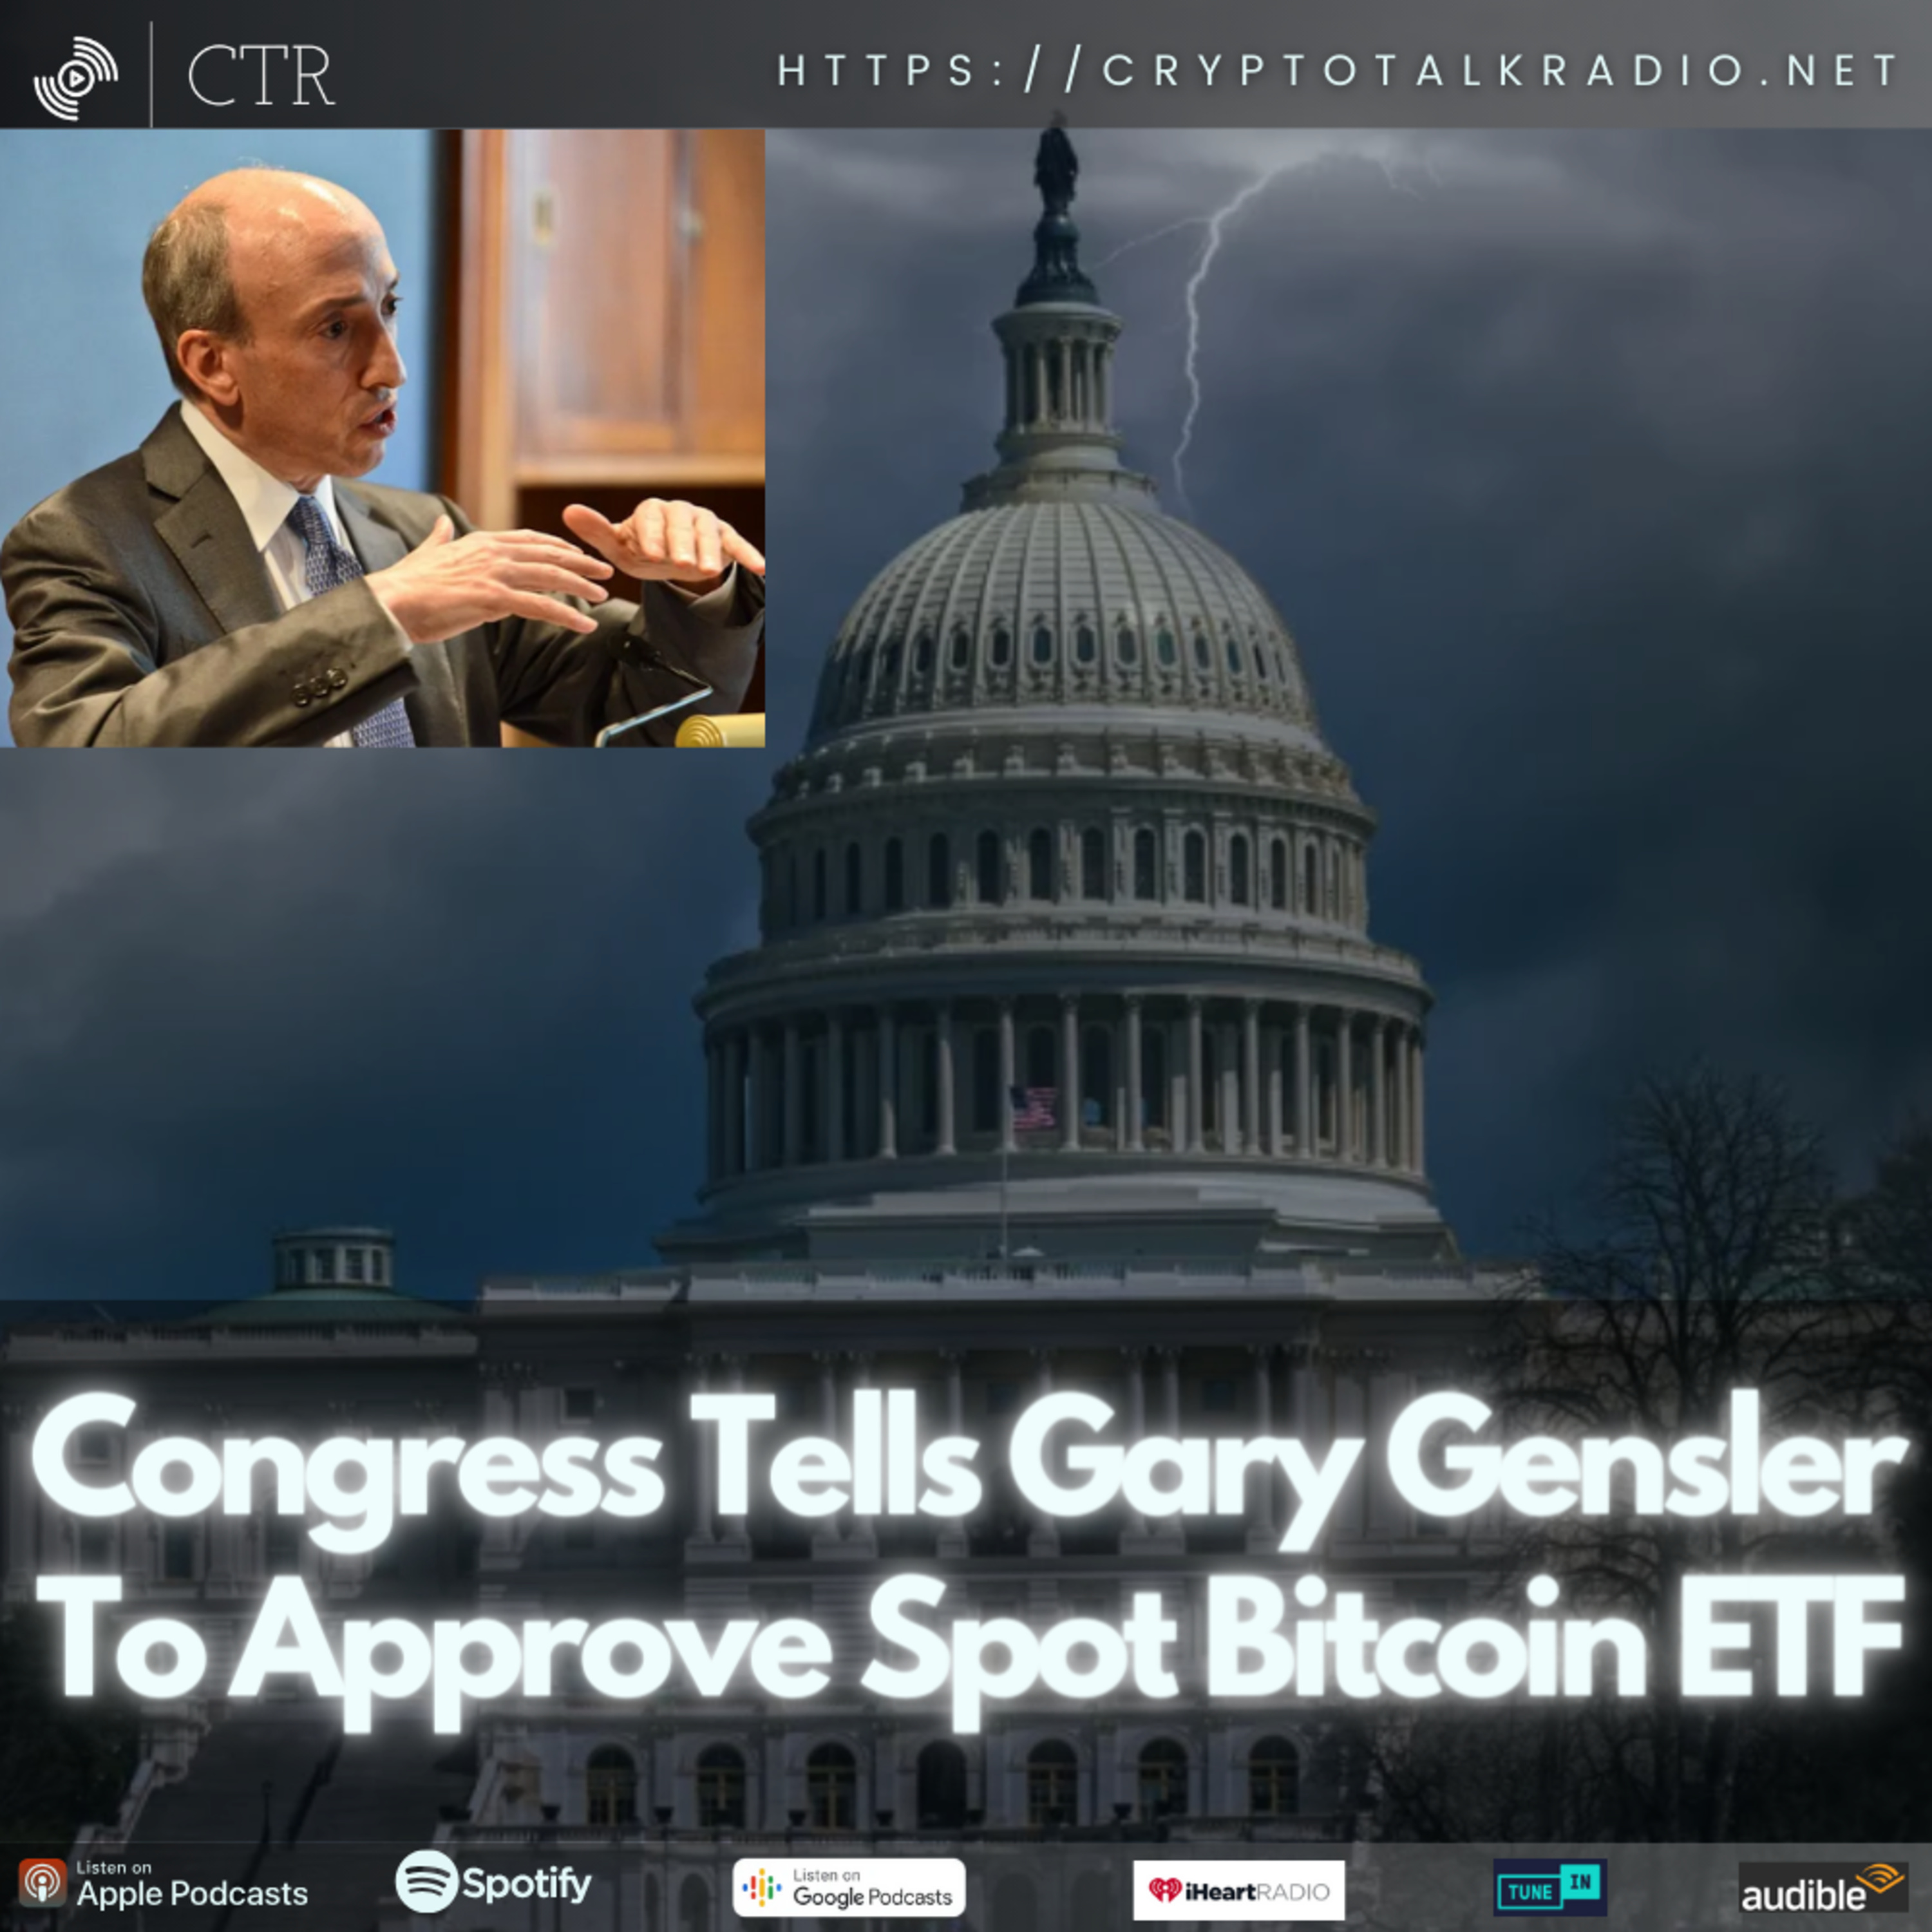 Congress Tells Gary Gensler To Approve Spot #Bitcoin ETF